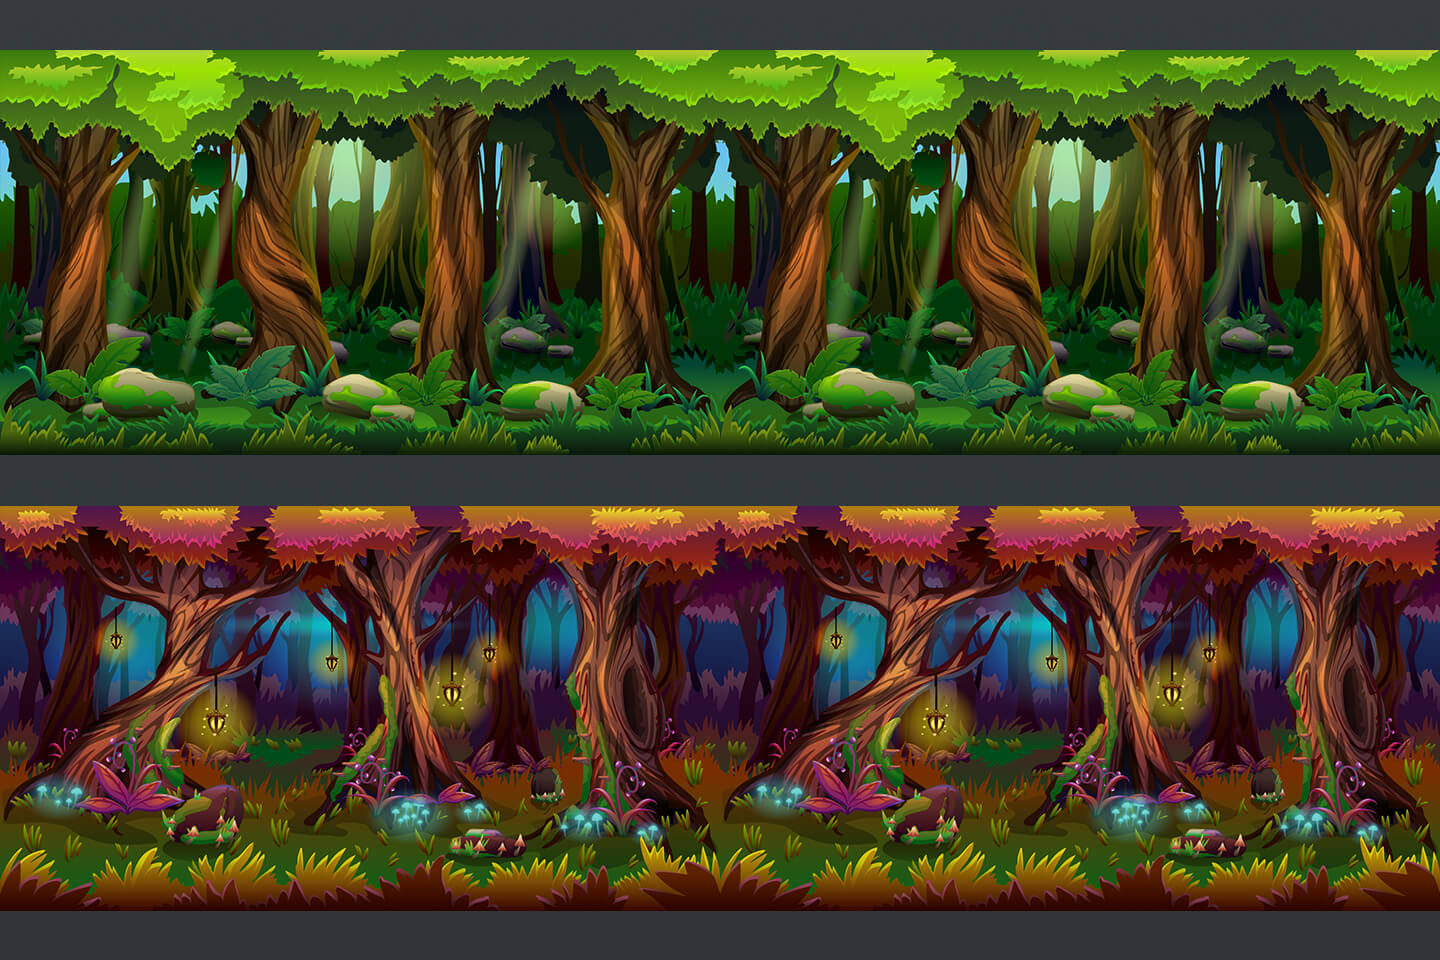 Free Cartoon Forest Game Backgrounds mang đến cho bạn cơ hội trùng hợp để được trải nghiệm và sử dụng các bối cảnh trong game miễn phí. Với những khu rừng sâu đi vào bạn sẽ có cảm giác thỏa sức khám phá và tận hưởng sự vui nhộn. Hãy xem hình ảnh liên quan để không phải bỏ lỡ cơ hội tuyệt vời này!